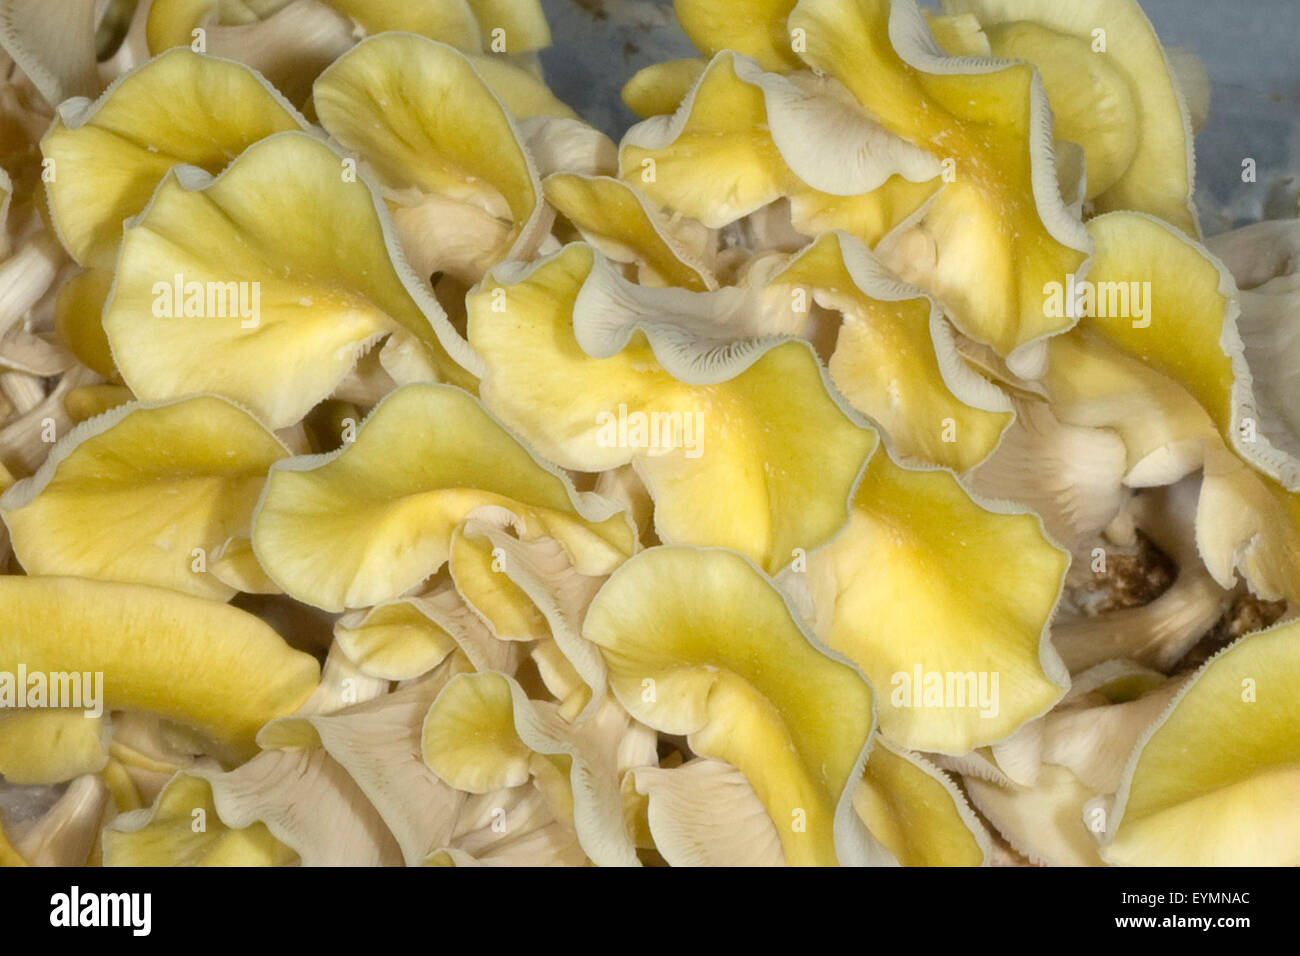 Limonenseitling, Pleurotus citrinopileatus Foto Stock